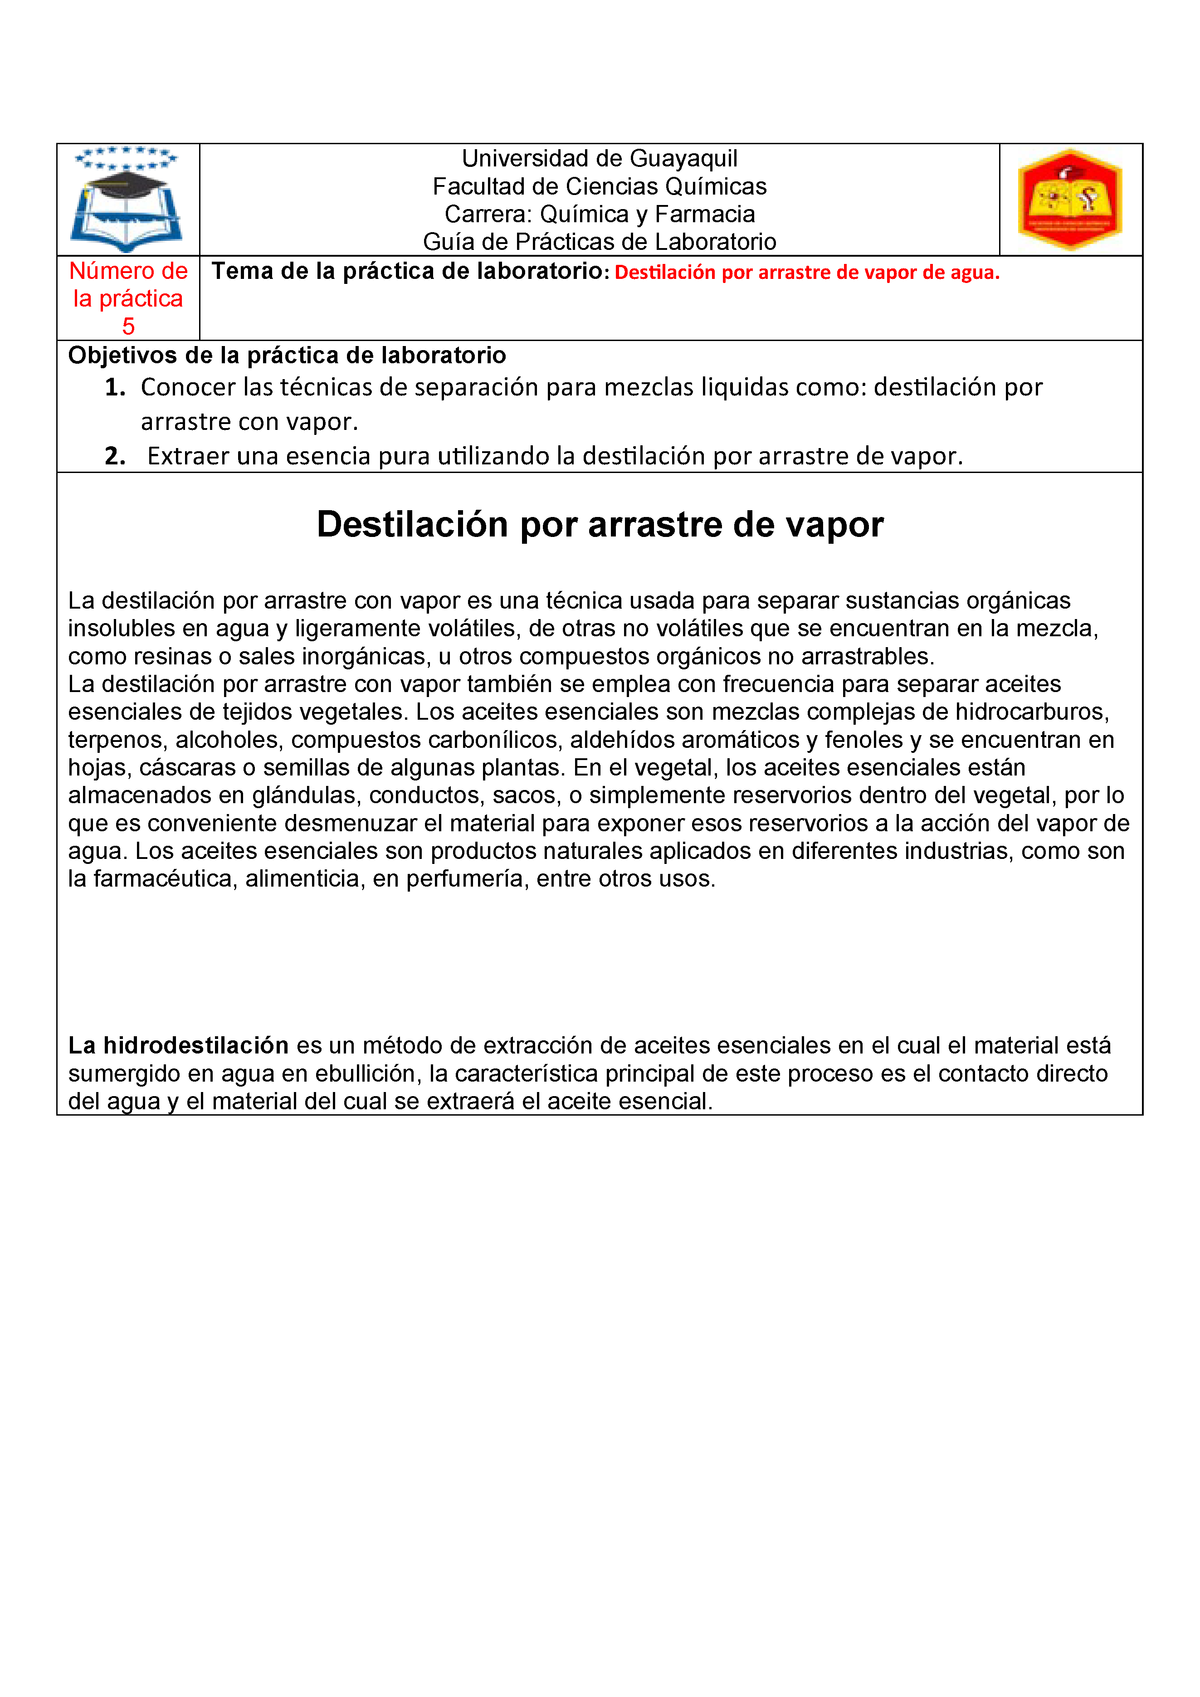 Glamour Escepticismo Refrescante Informe 2 Destilación por arrastre de vapor de agua - 202 - StuDocu